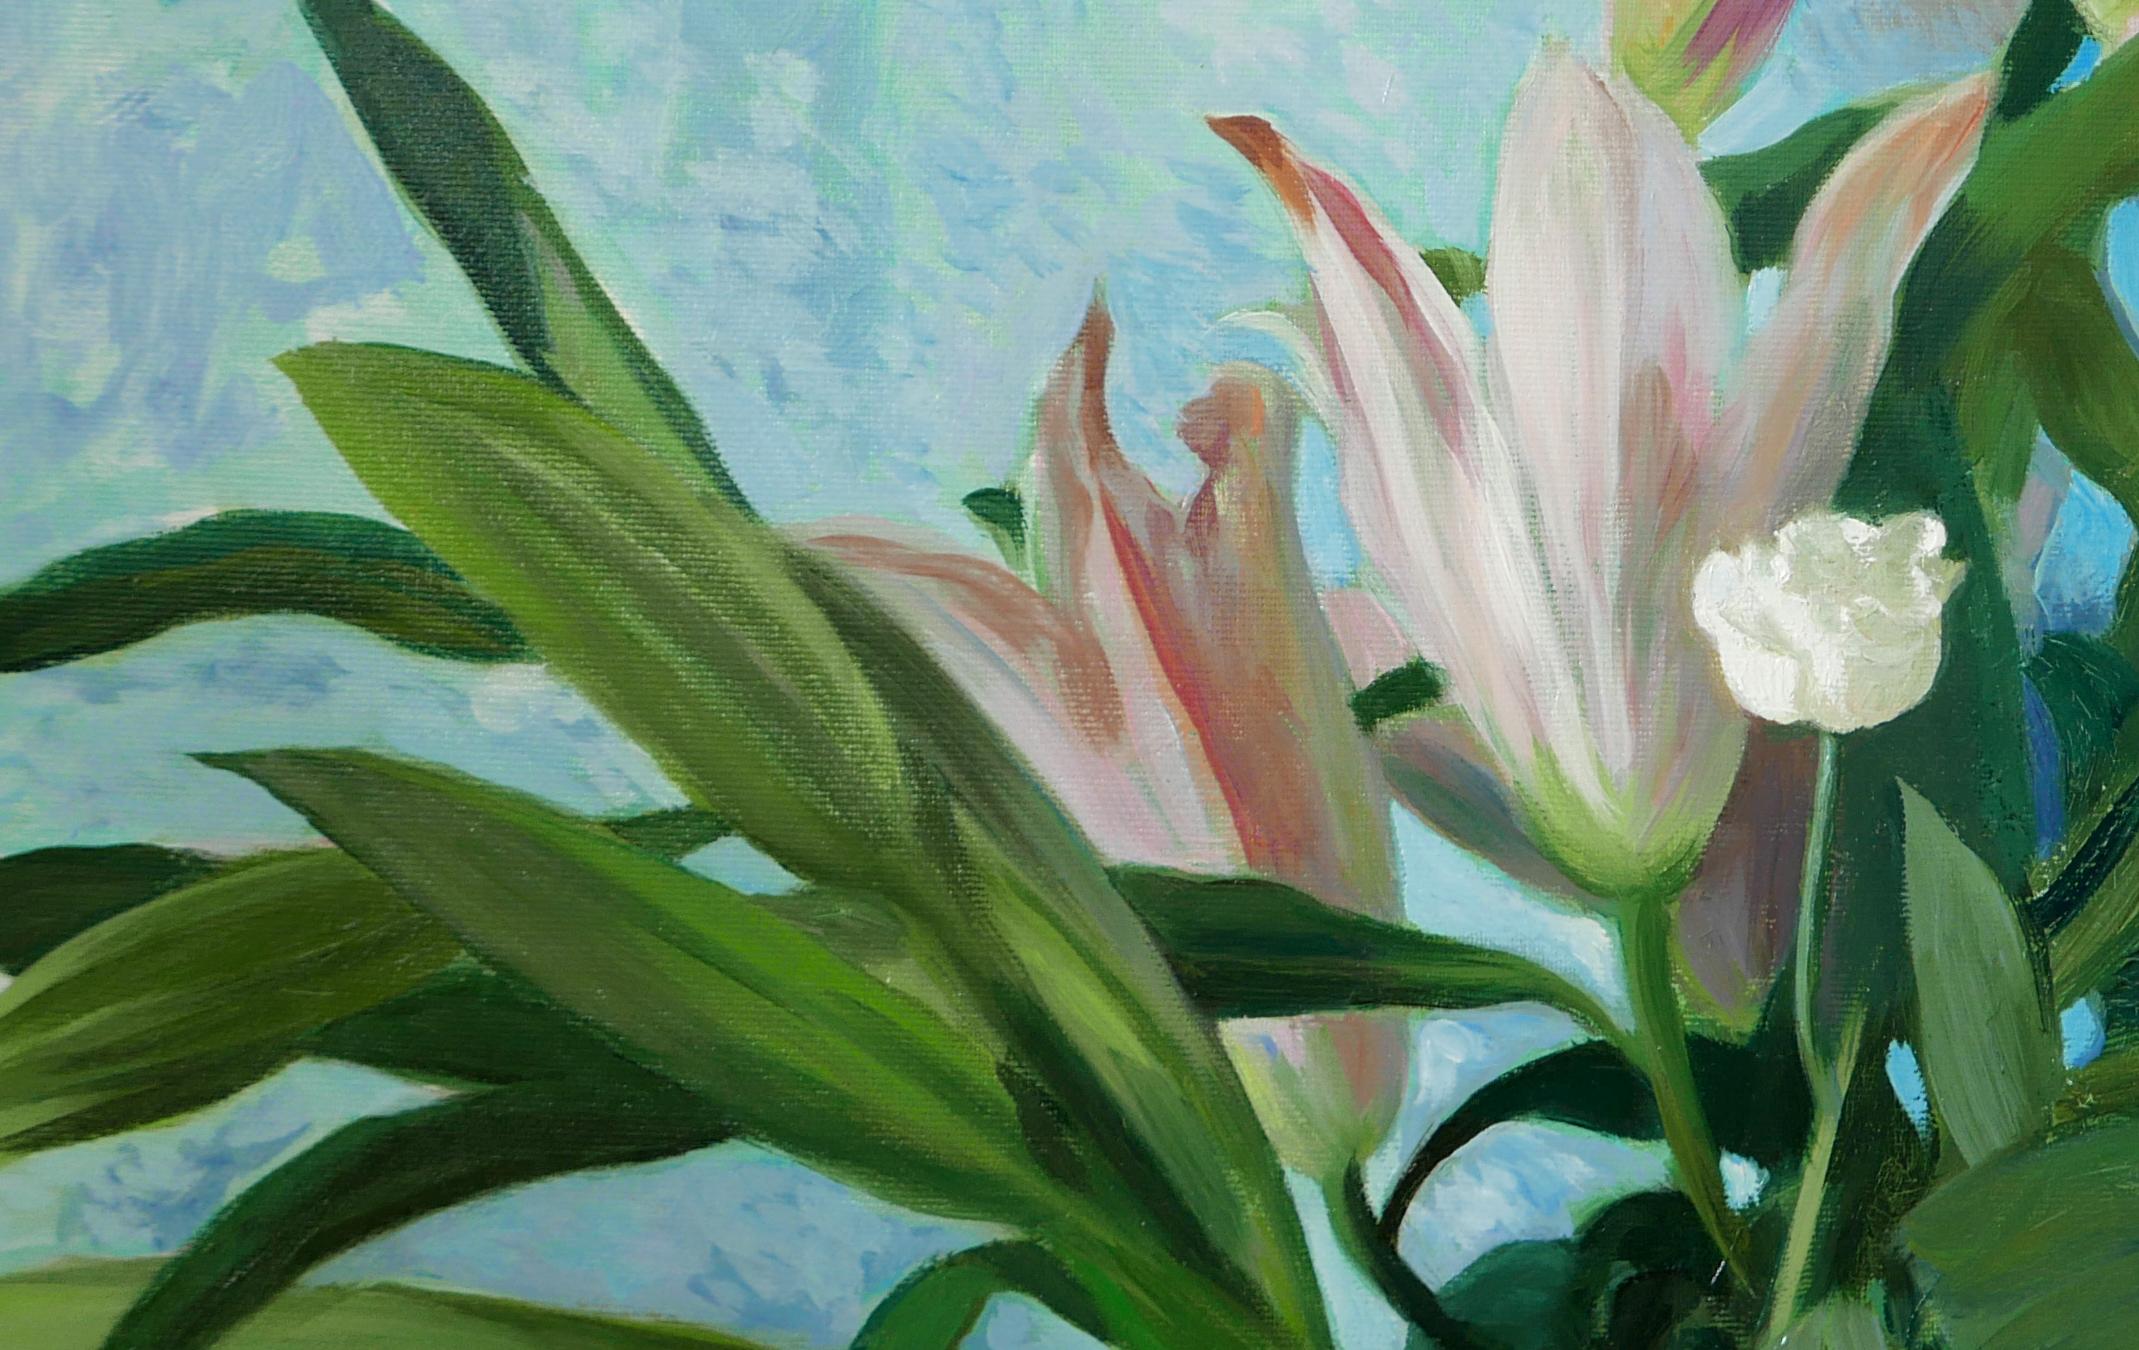 In The Wild World Of The White Flower – Ölgemälde in Weiß, Grün, Rosa und Blau (Impressionismus), Painting, von Petya Deneva